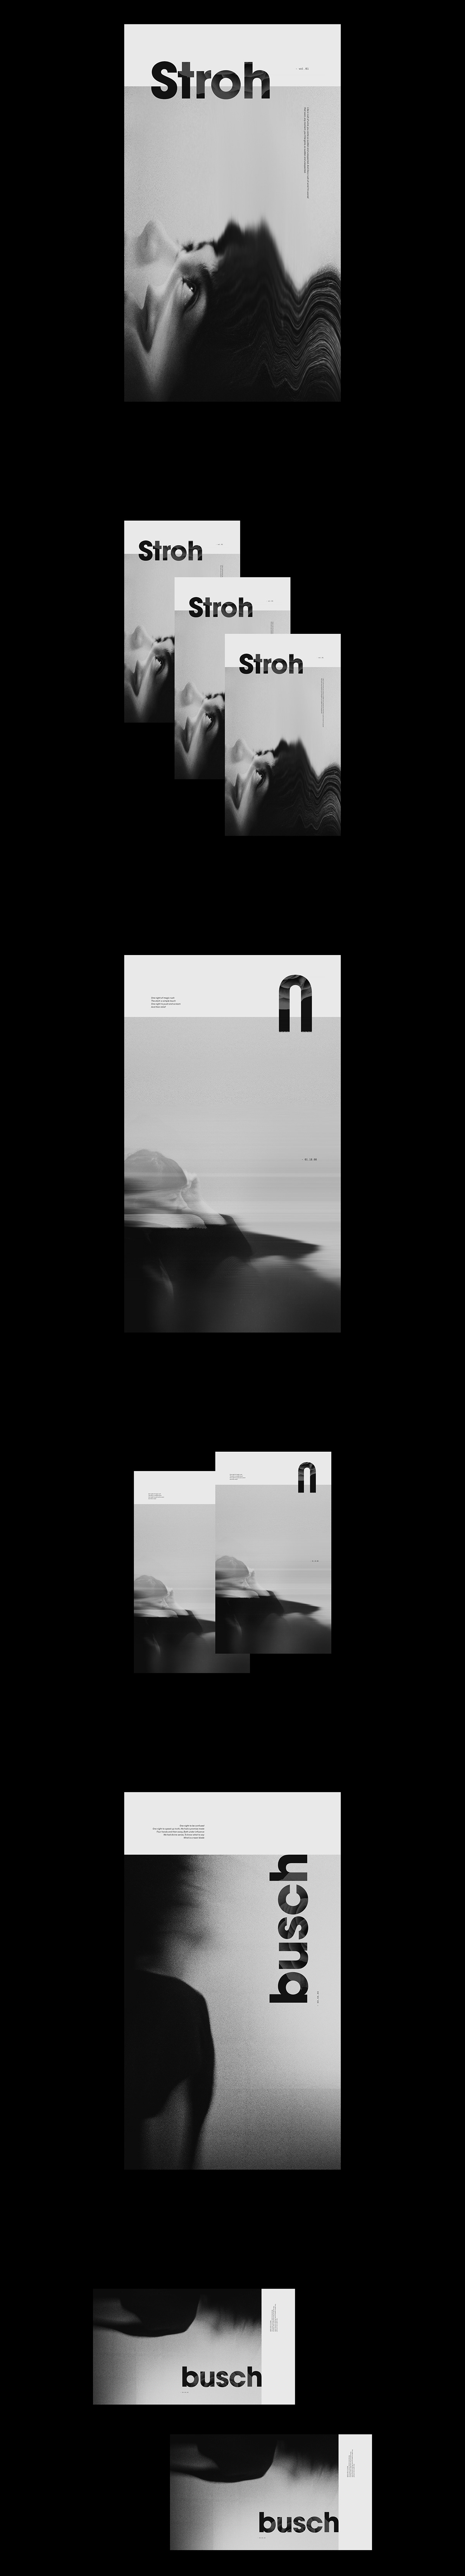 Strohbusch 35mm Canon Glitch grain poster black & white series